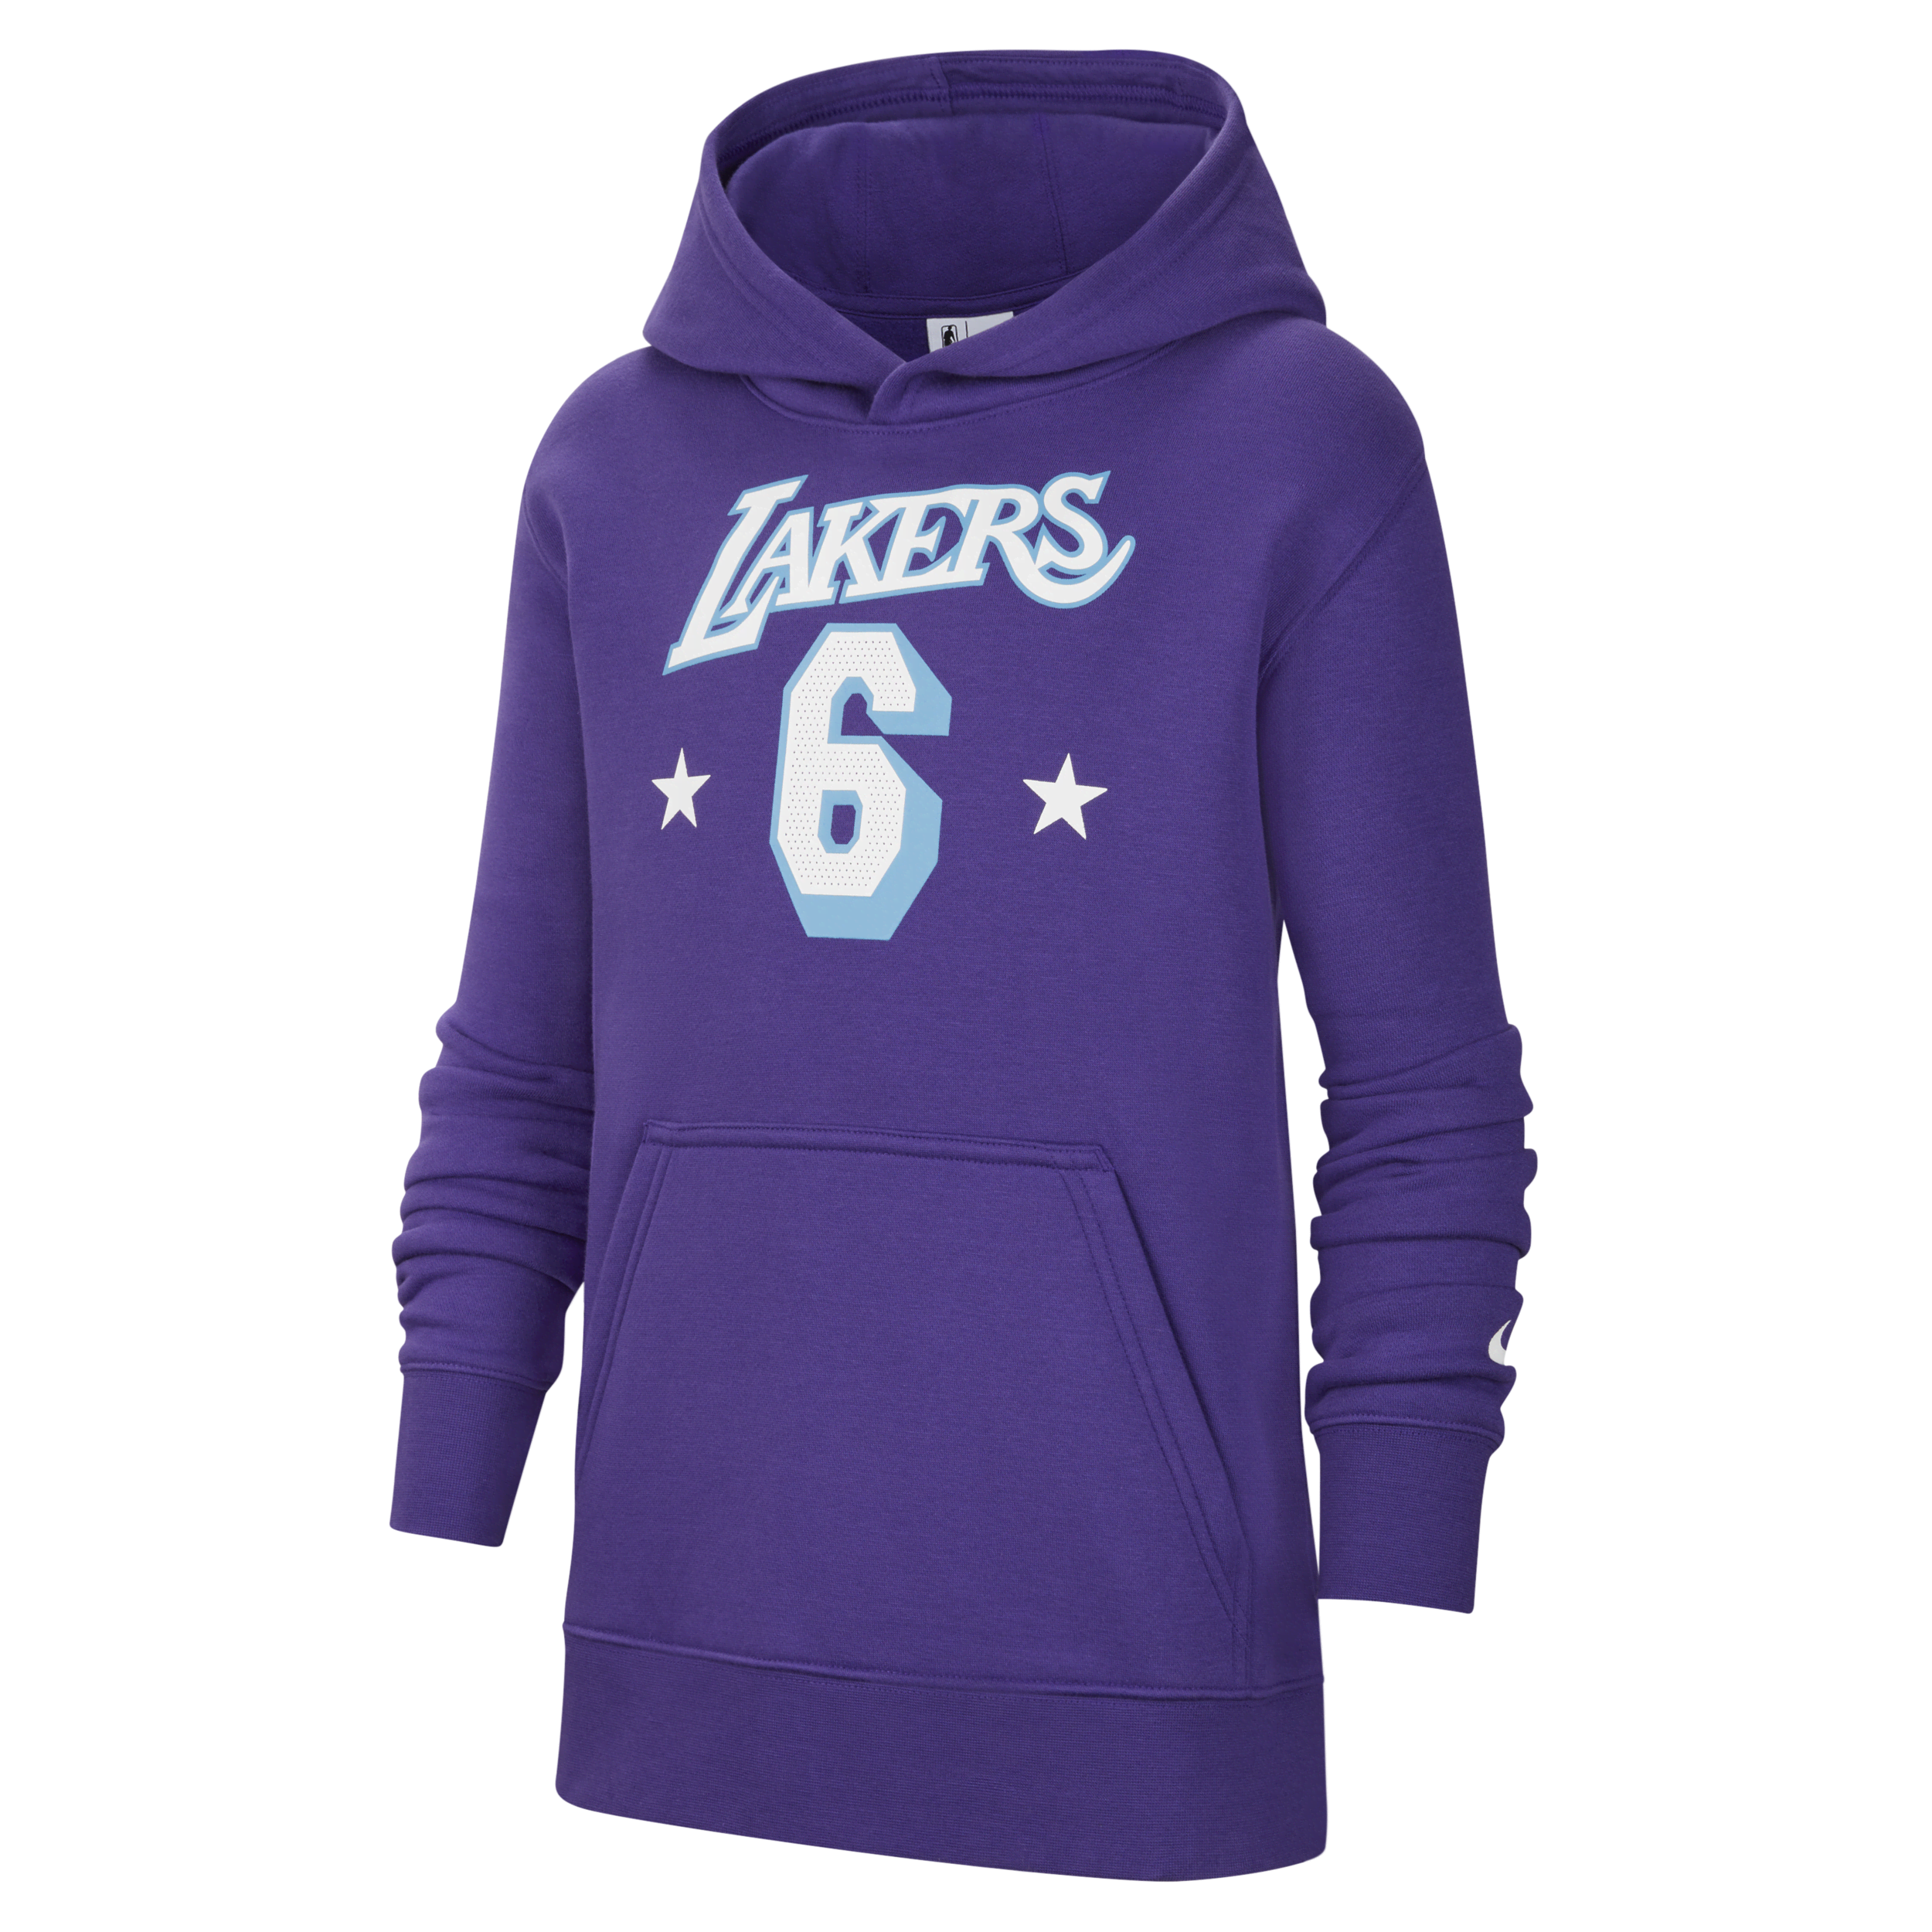 Felpa pullover in fleece con cappuccio Los Angeles Lakers Nike NBA - Ragazzi - Viola